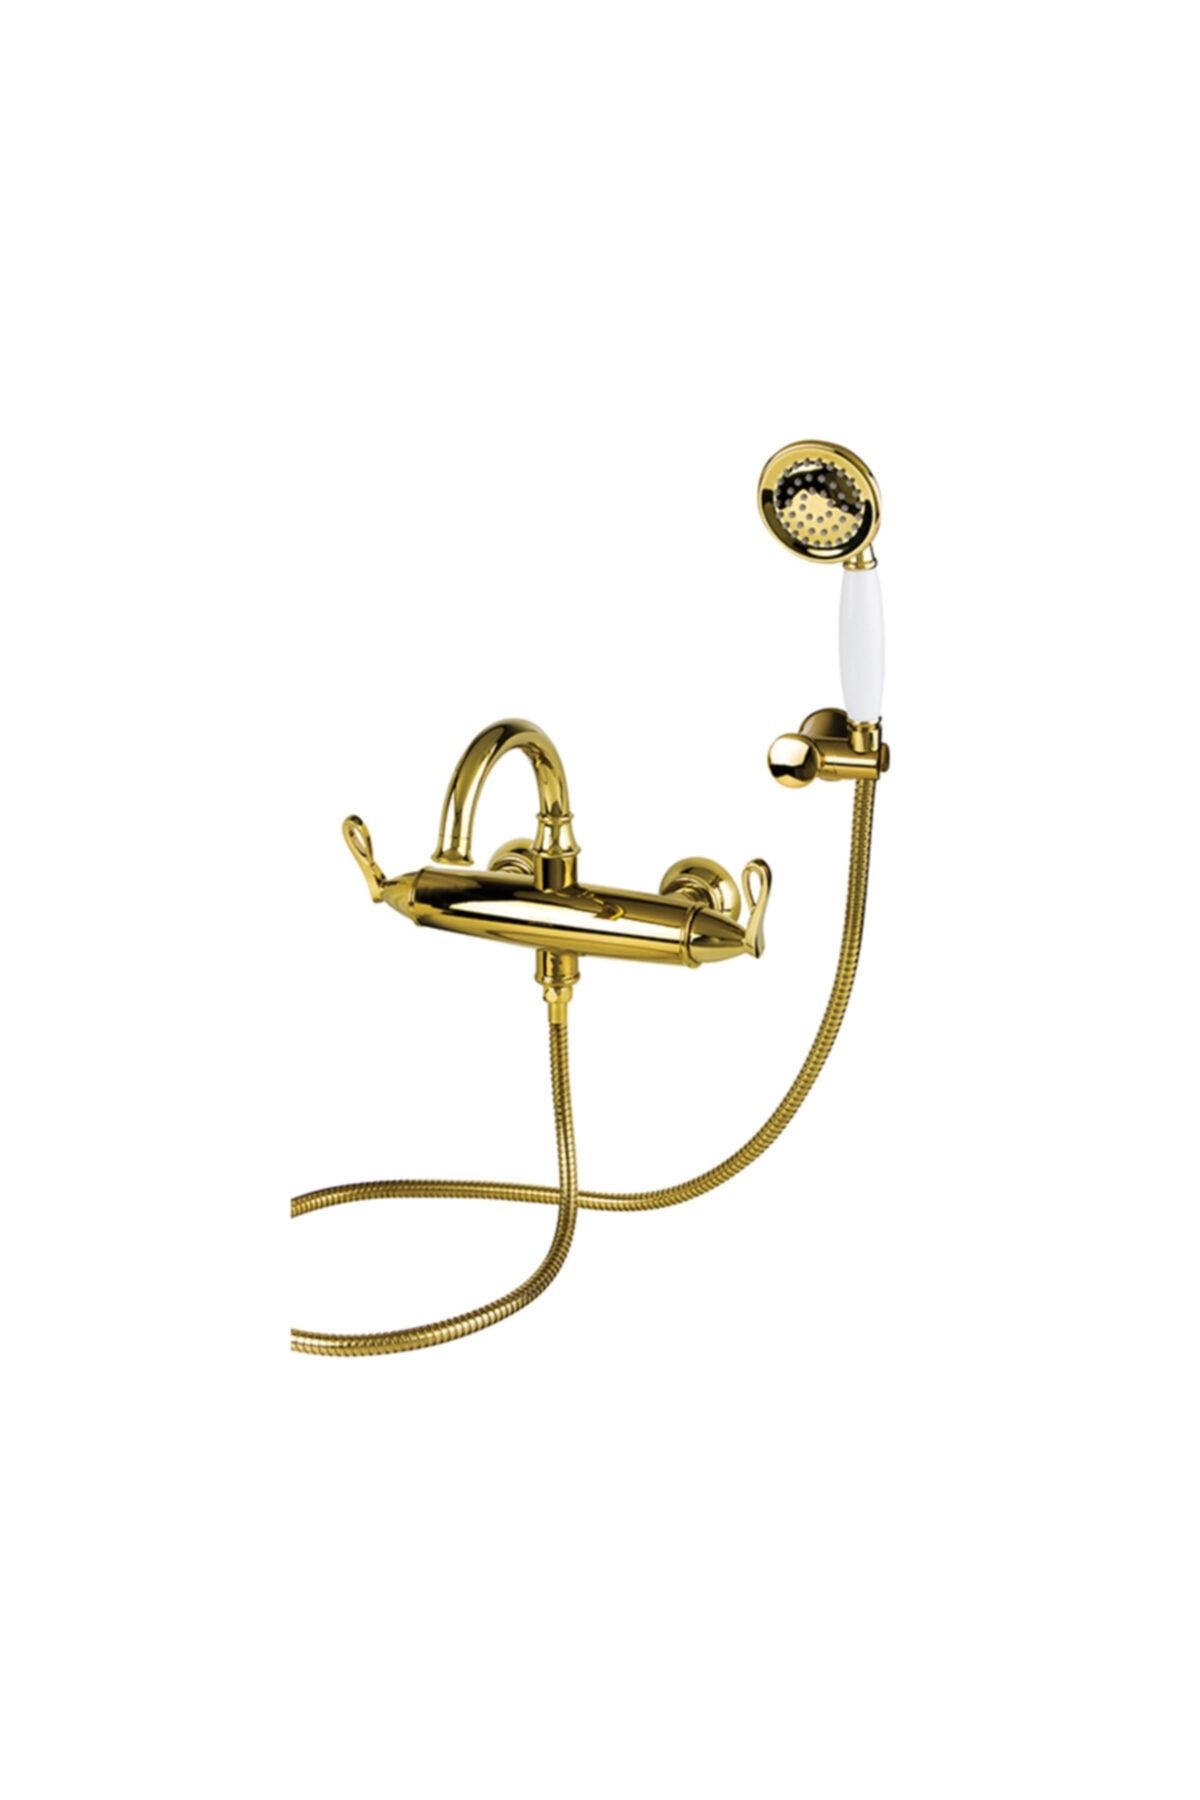 Newarc Golden Banyo Bataryası Altın- 951511